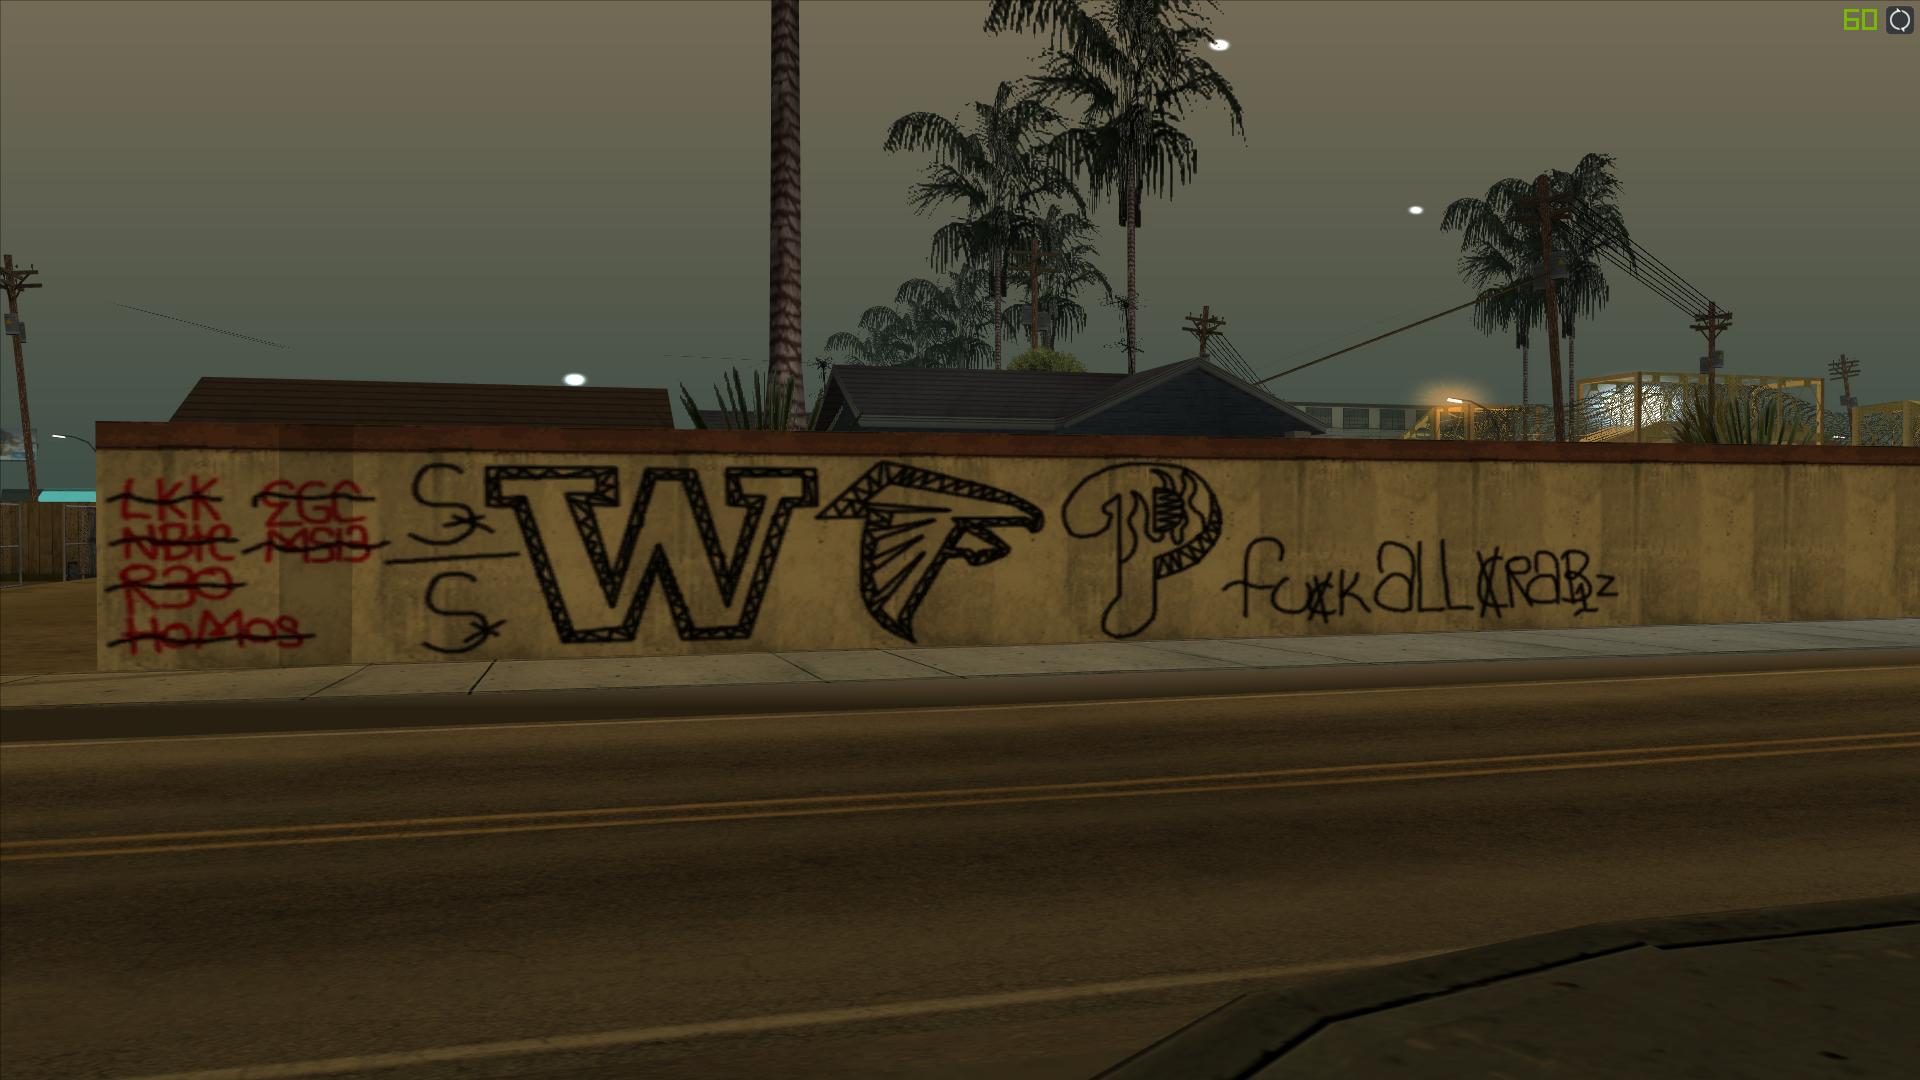 [REL] Piru's Gang WFP_EMOD GraffitiPack. Bfa3